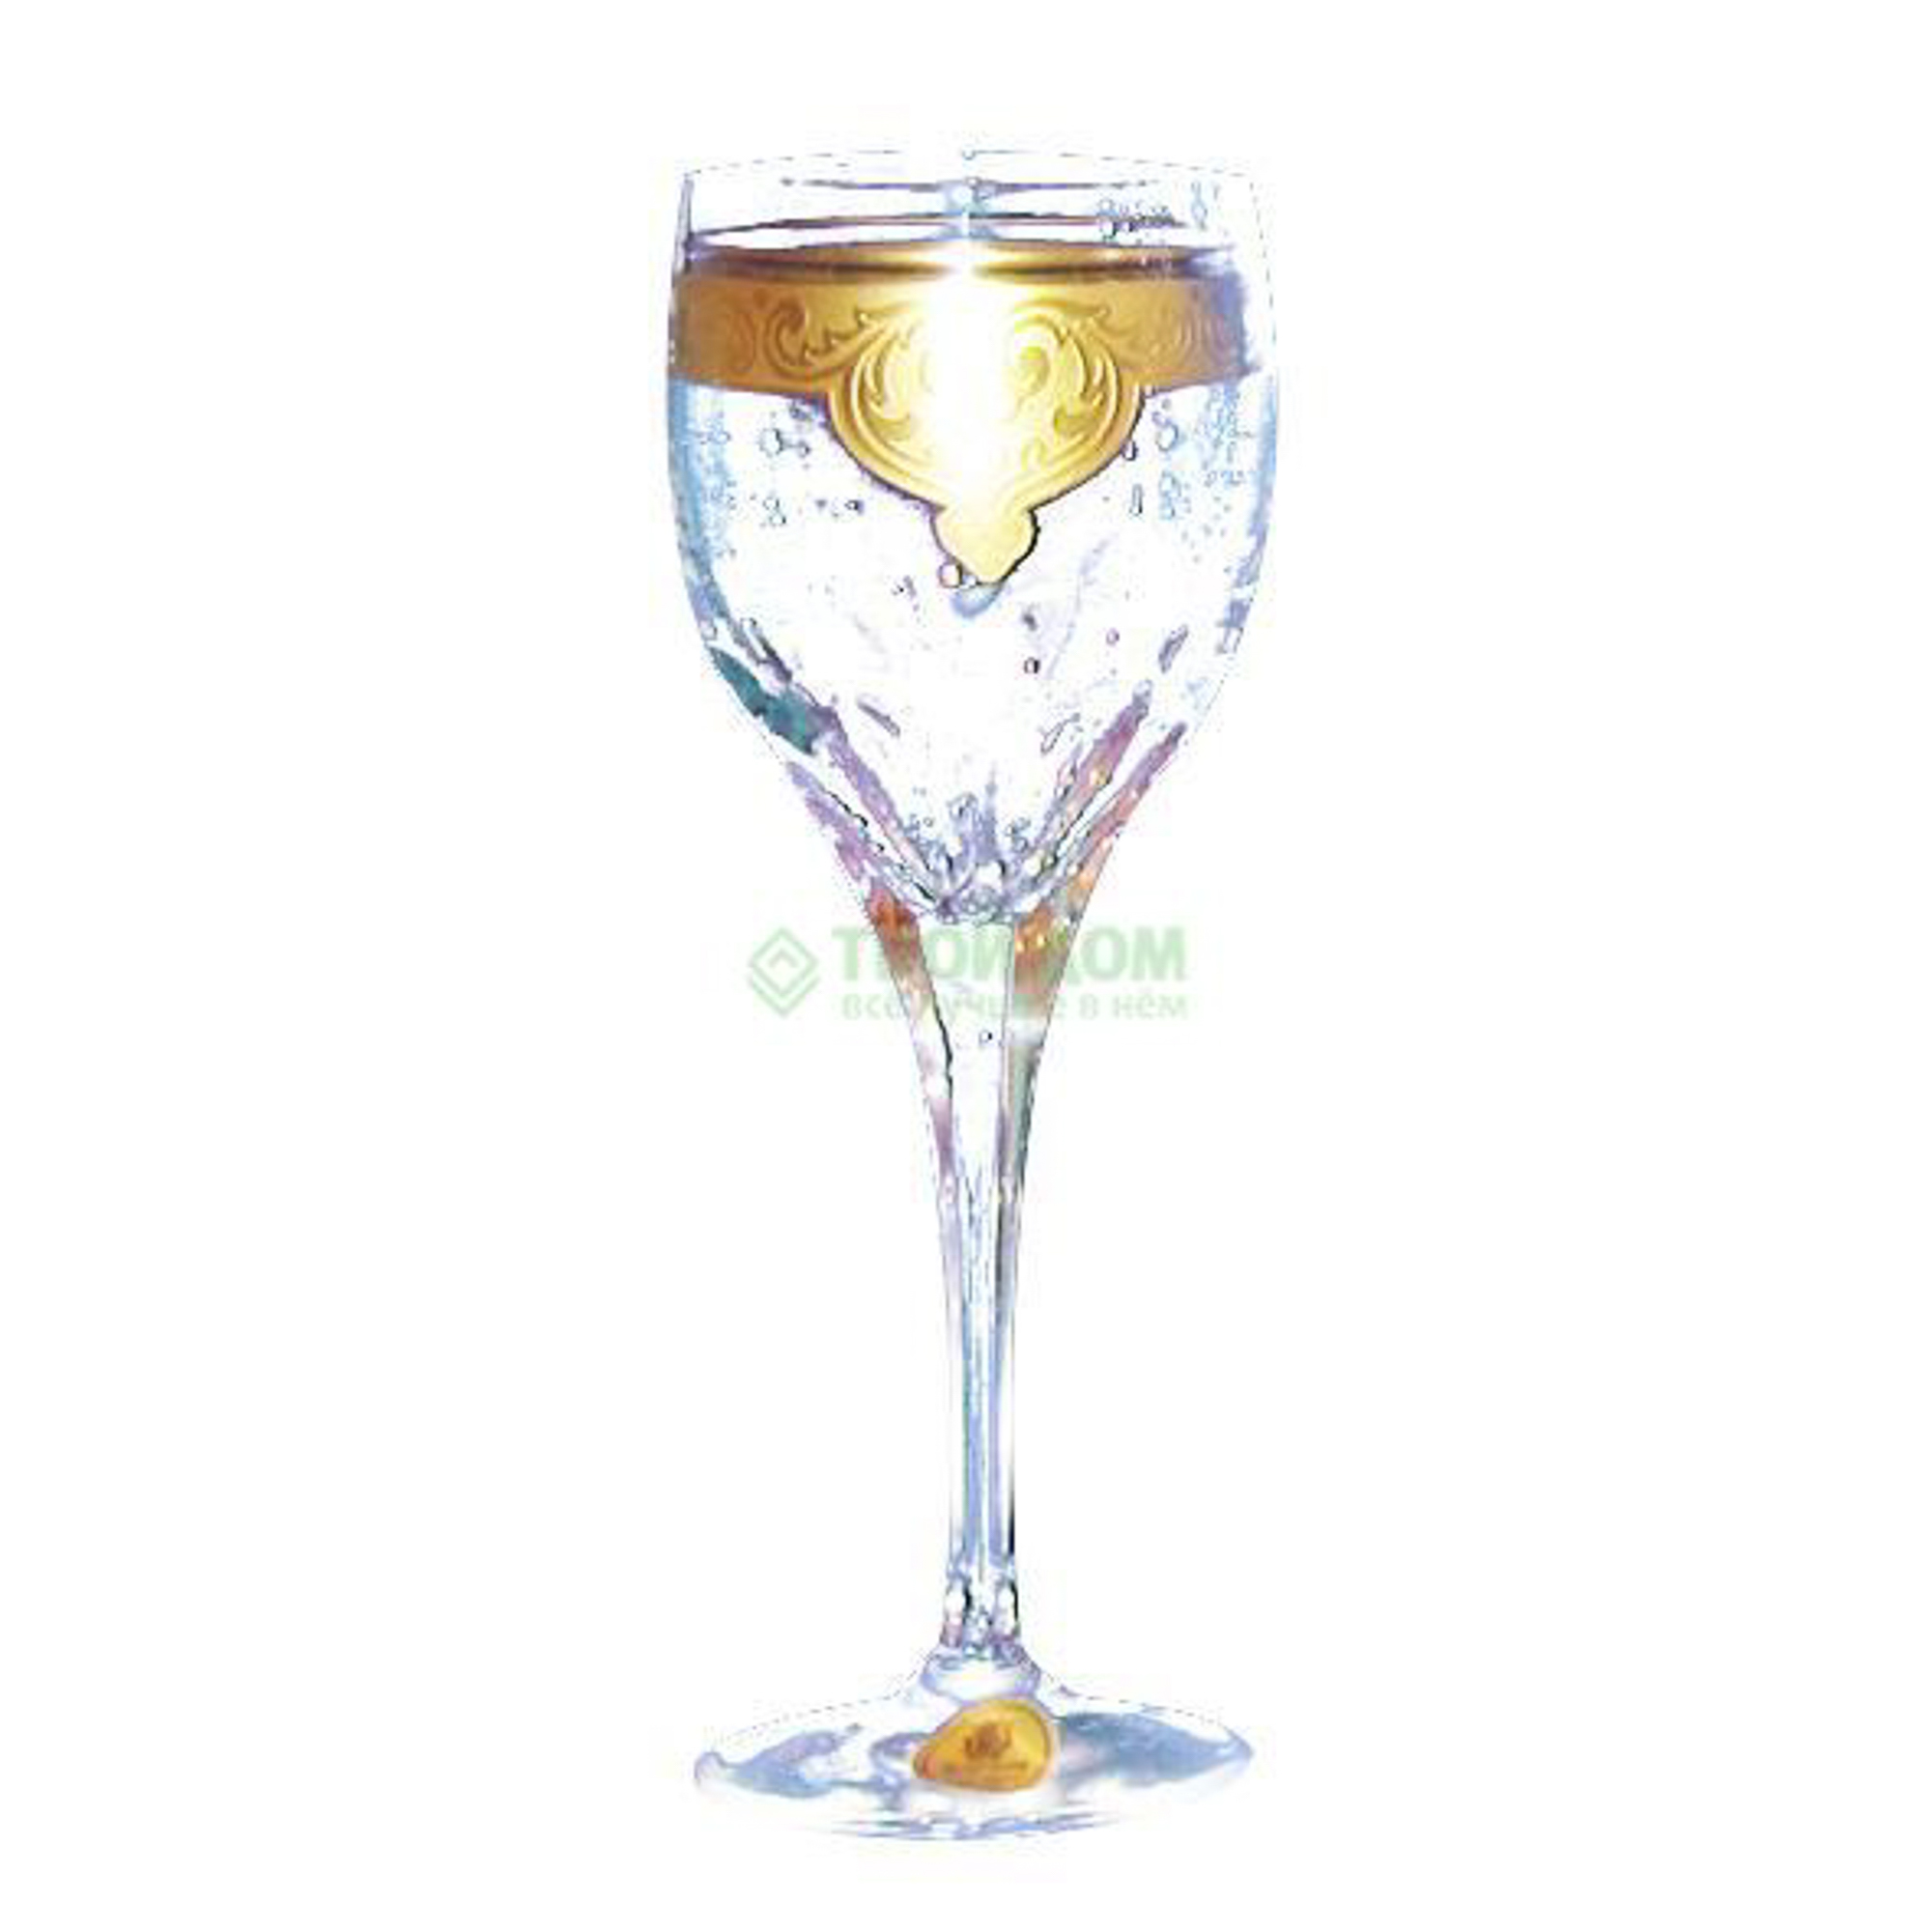 Набор рюмок Arnstadt kristall Sanssouci  для водки 6шт 60мл пл (7092) набор рюмок для водки crystal bohemia angela 60мл 6шт зеленый